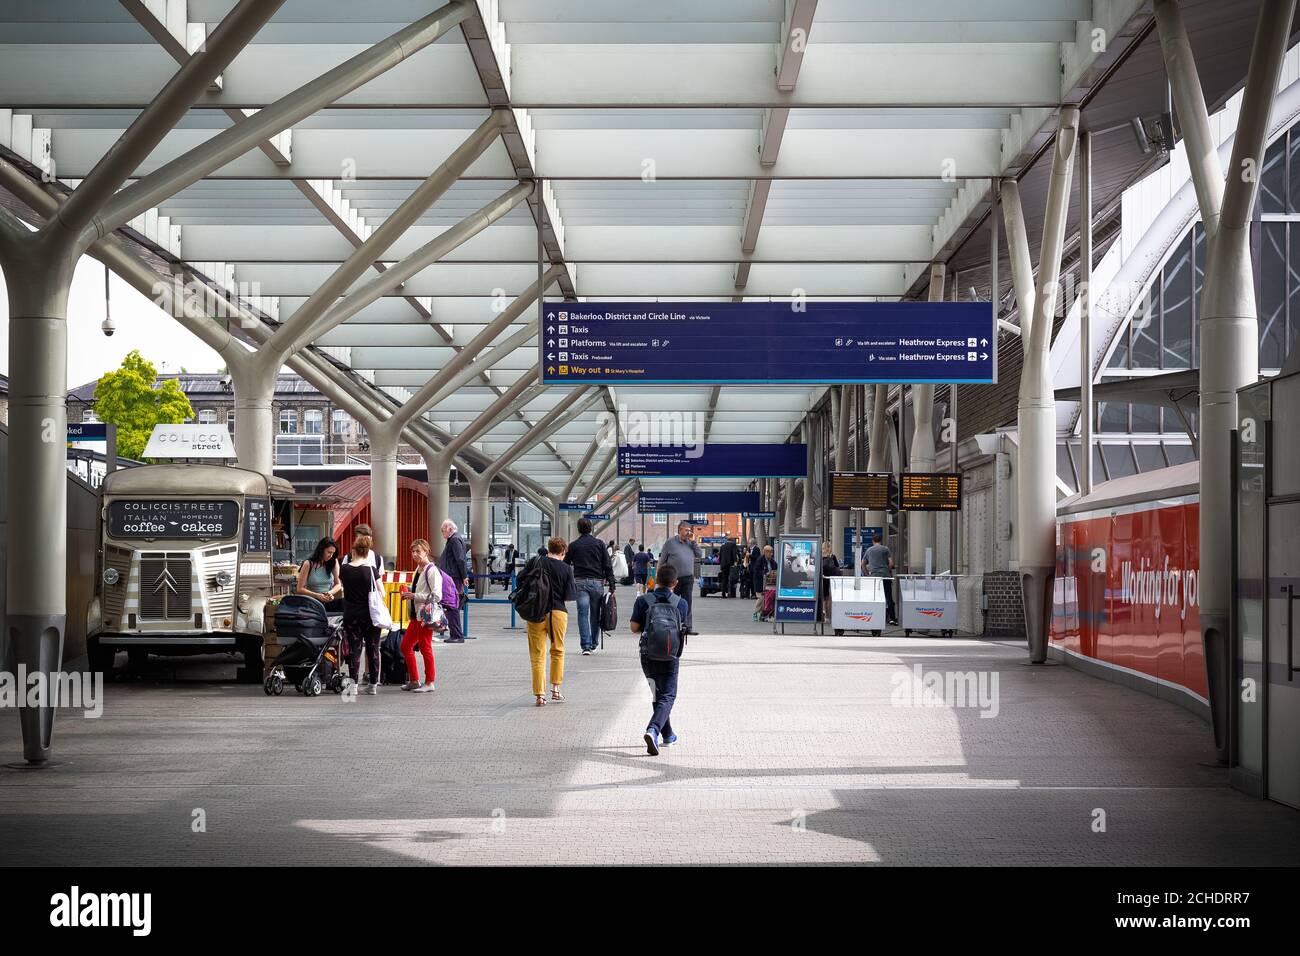 Londres, Royaume-Uni - 17 avril 2019 - une des entrées de la gare de Paddington Banque D'Images